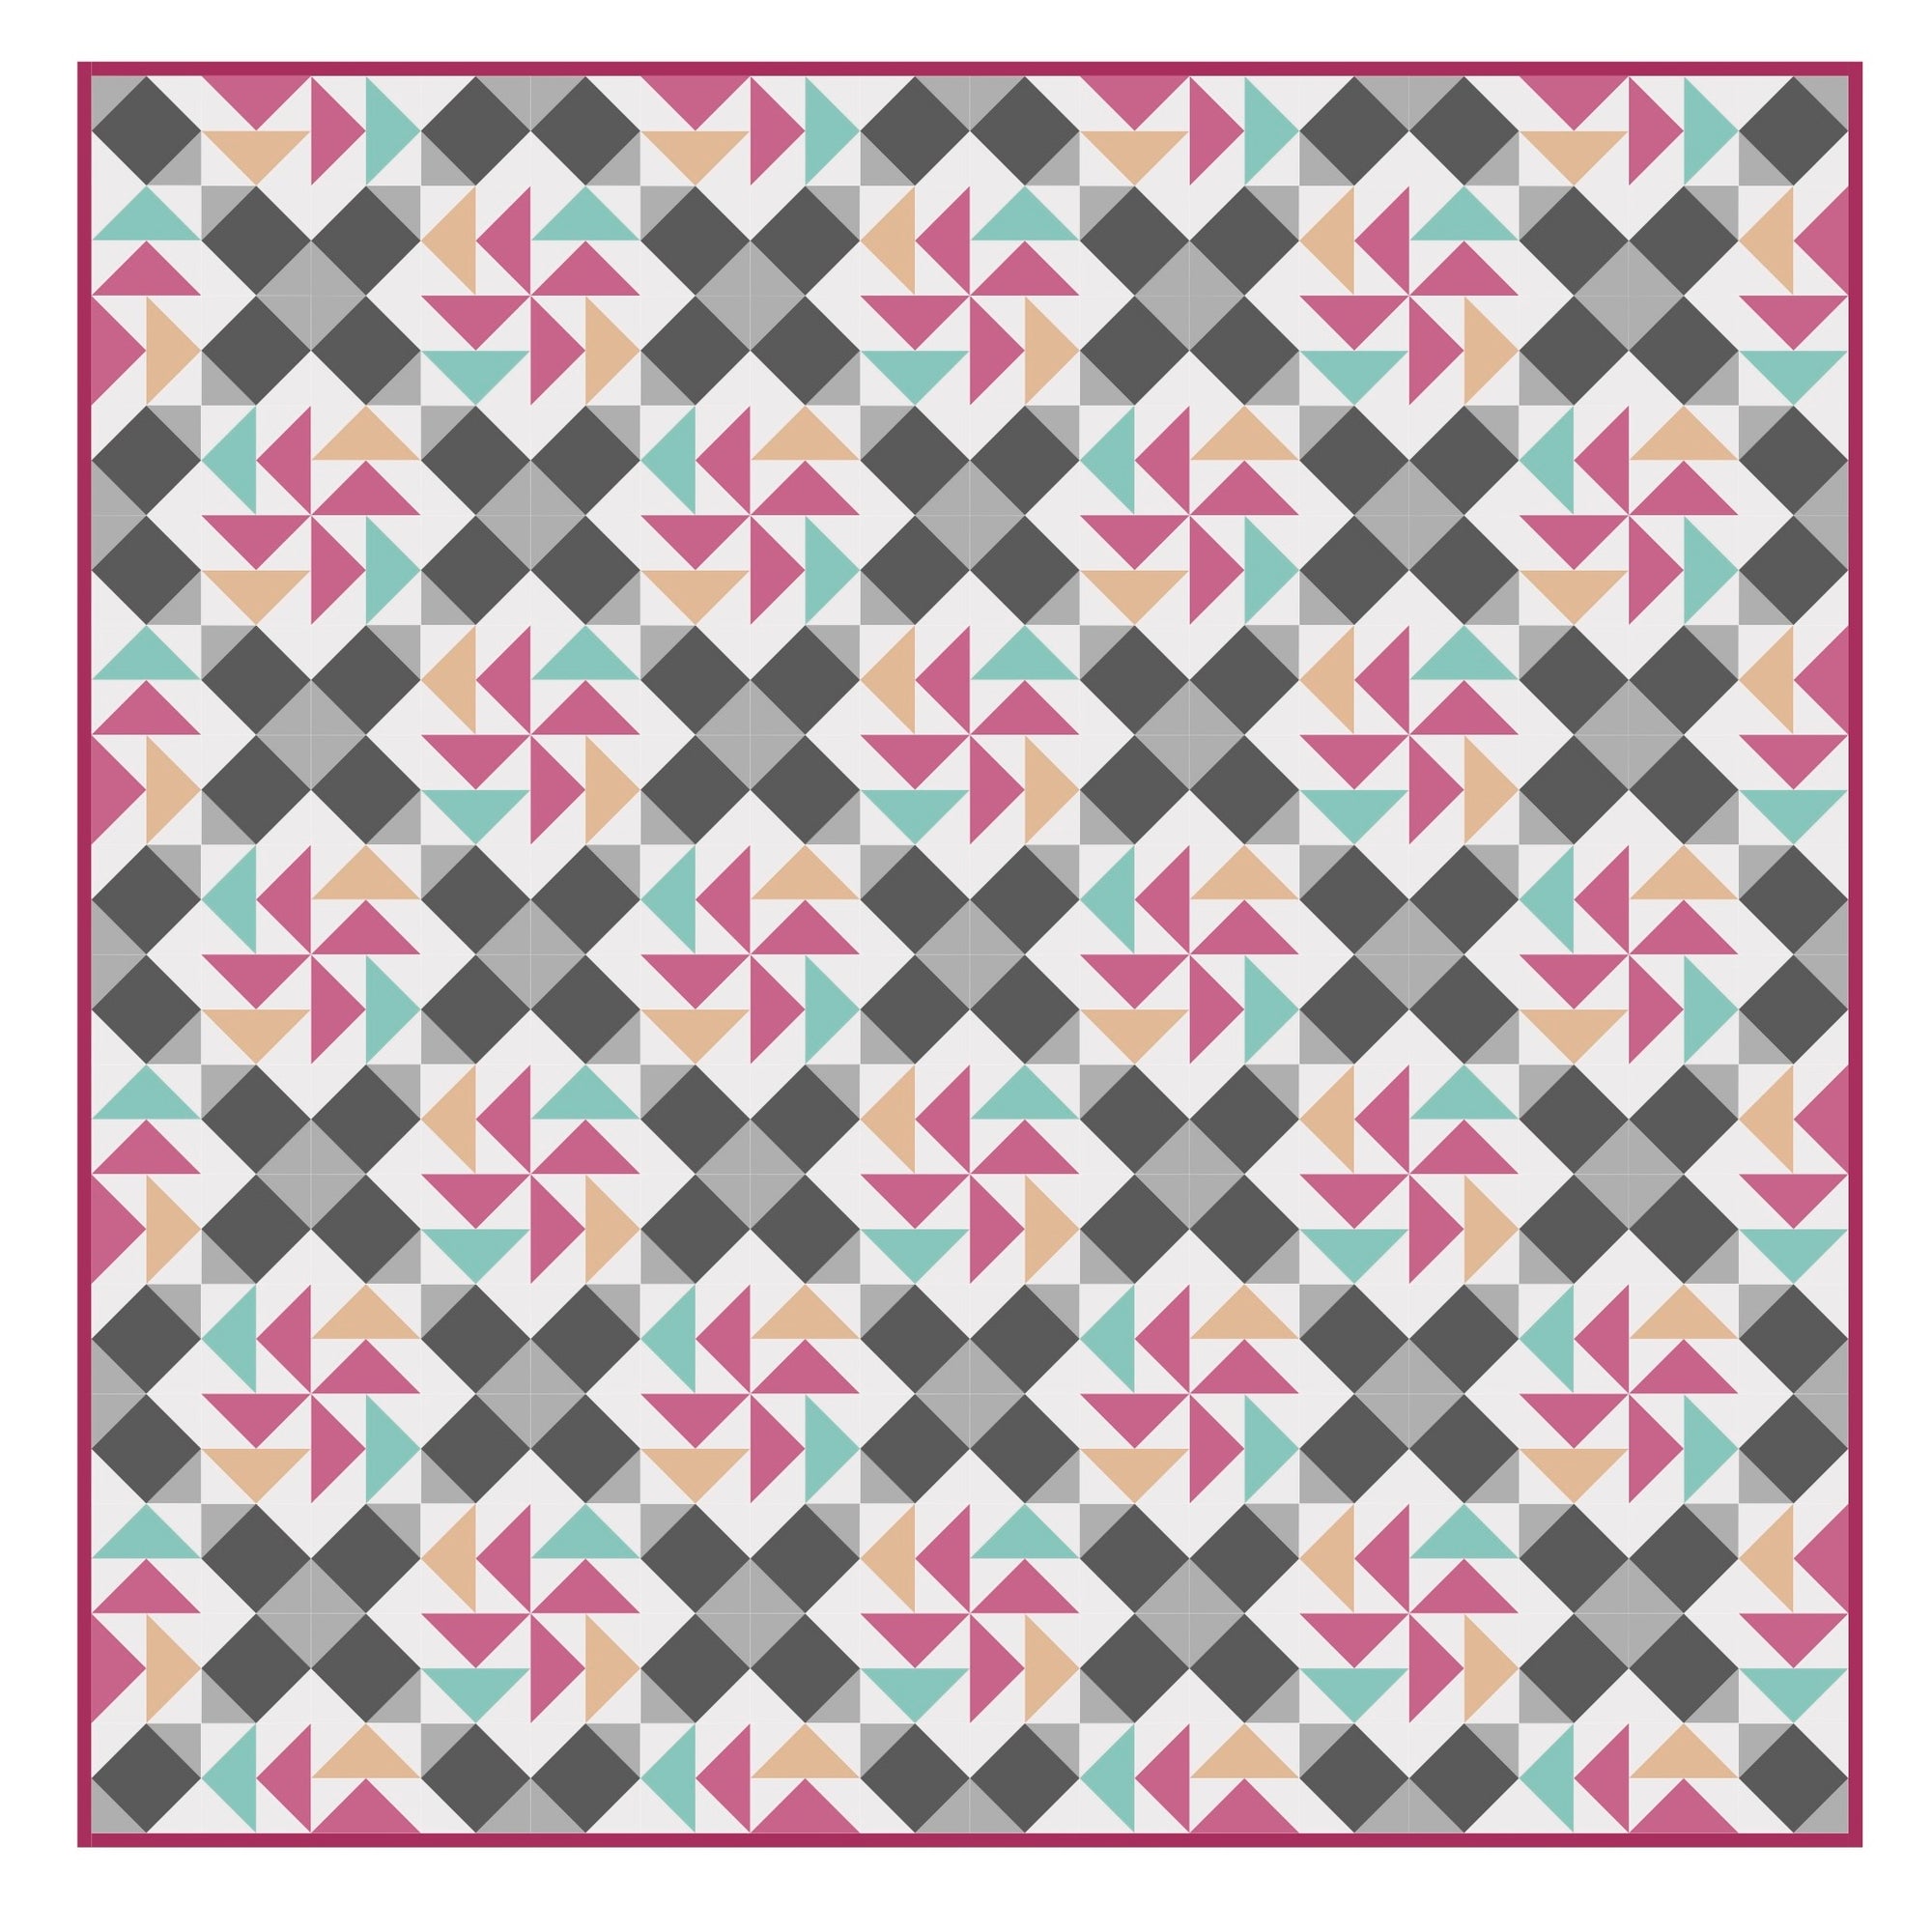 Eloise - Quilt Pattern Details